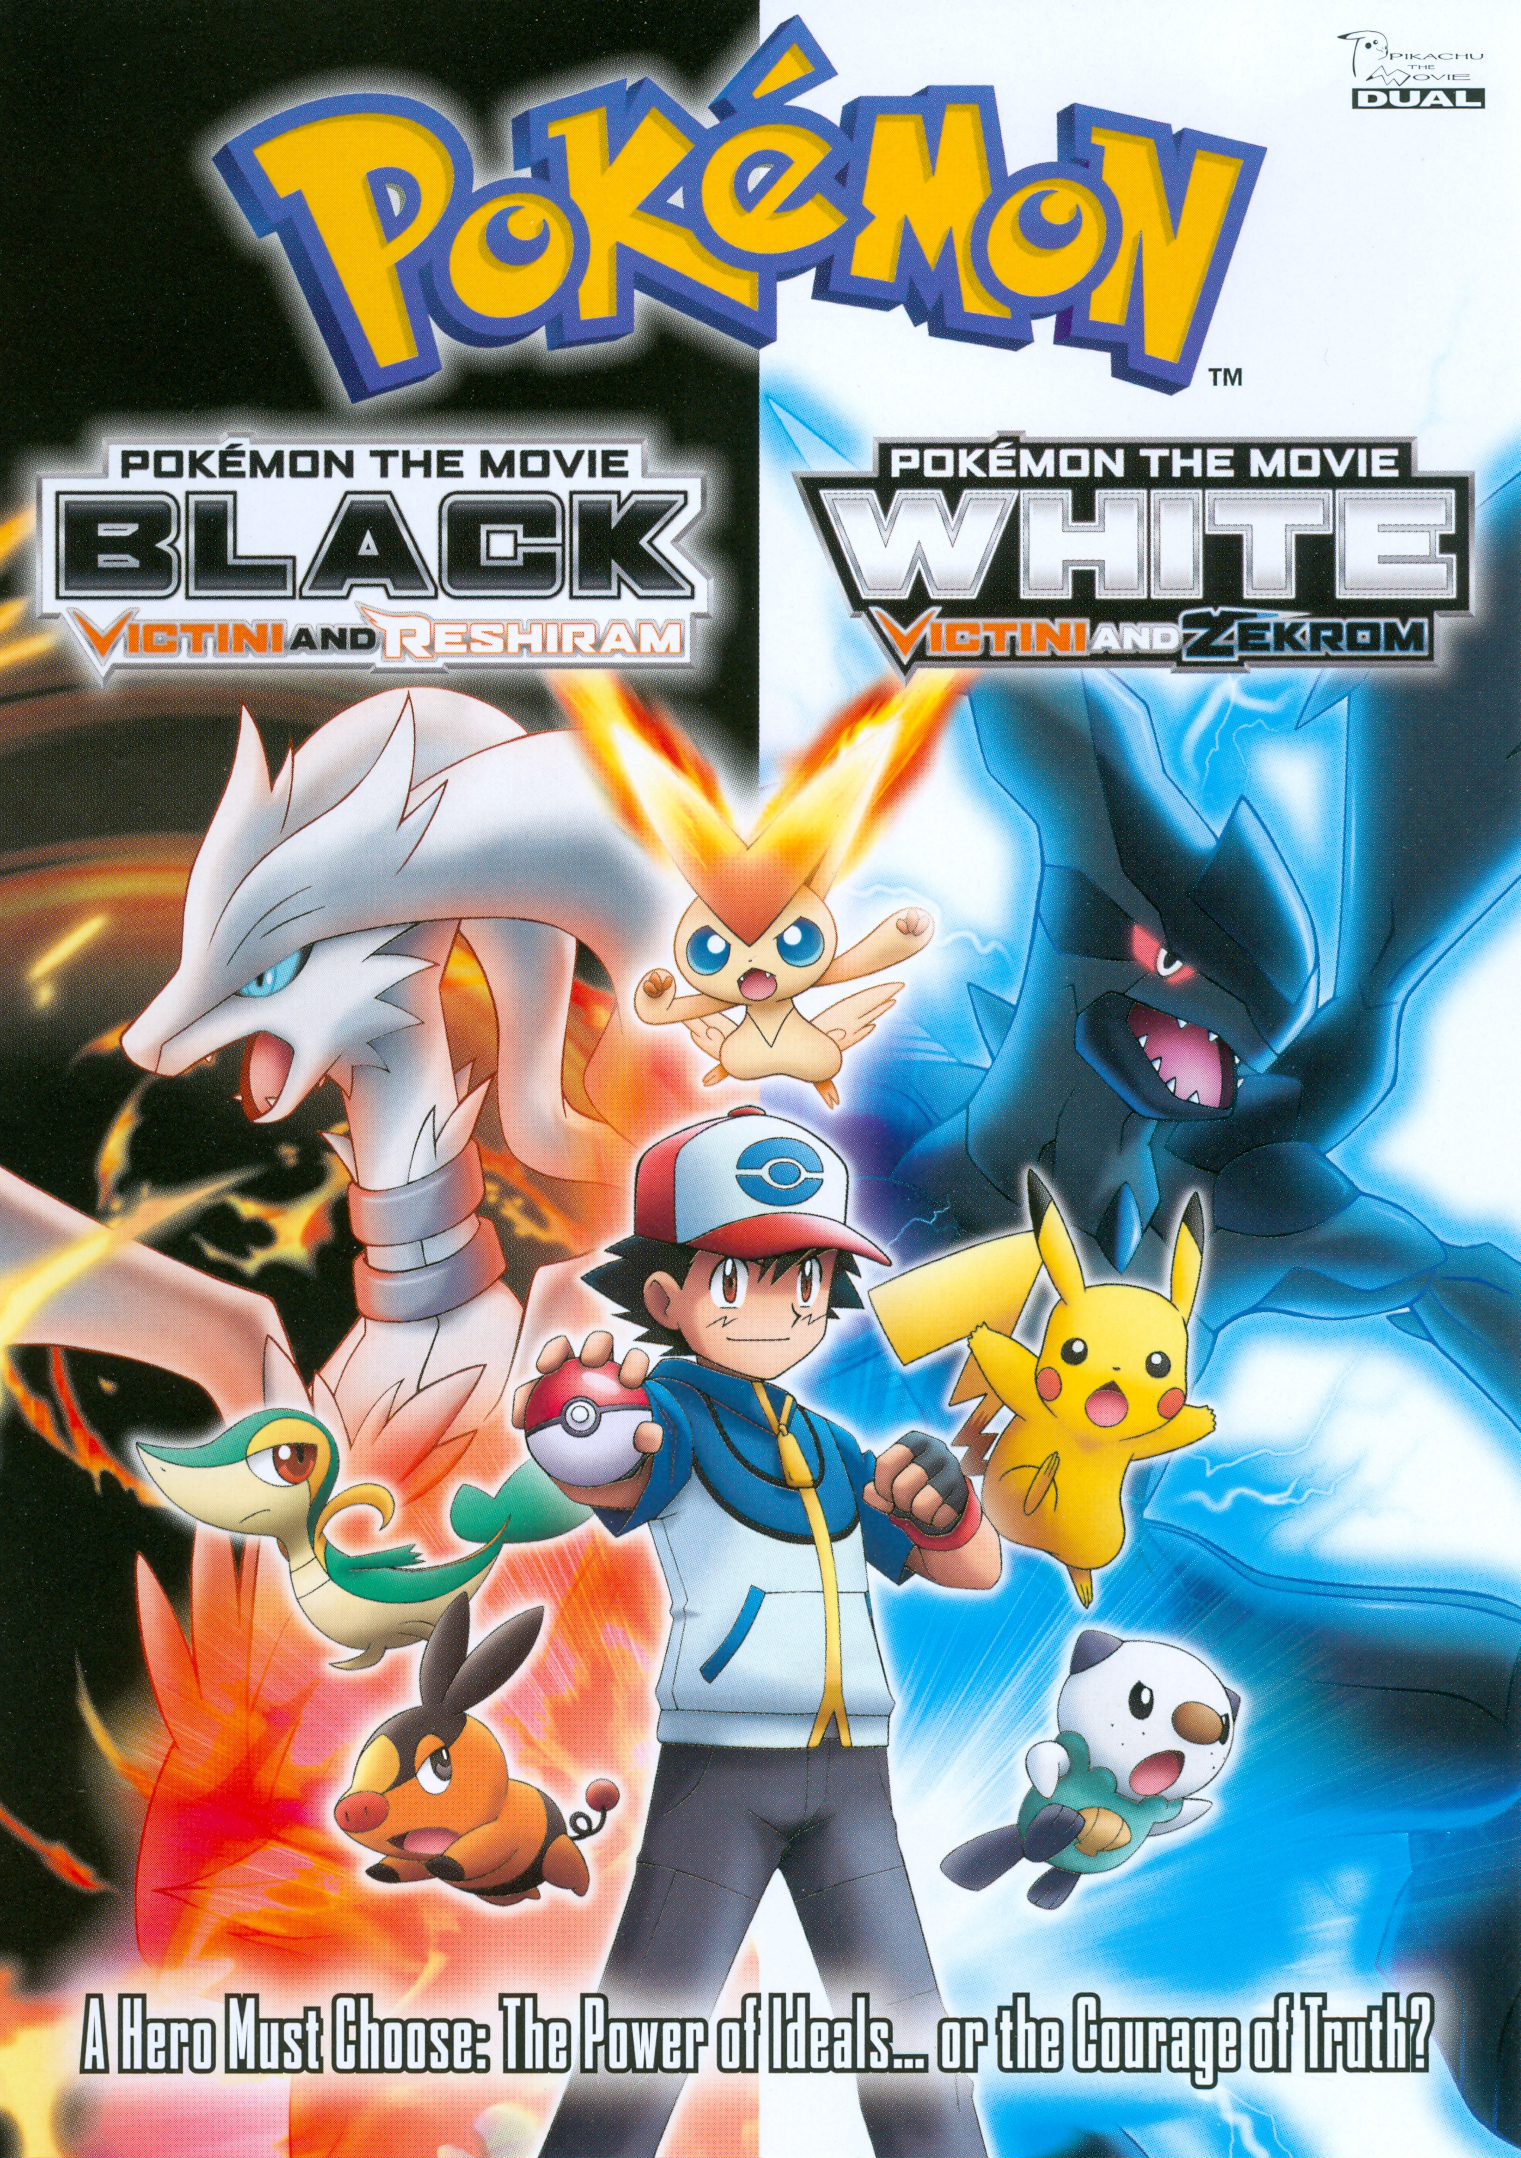 Best Buy: Pokémon Black Version 2 and Pokémon White Version 2